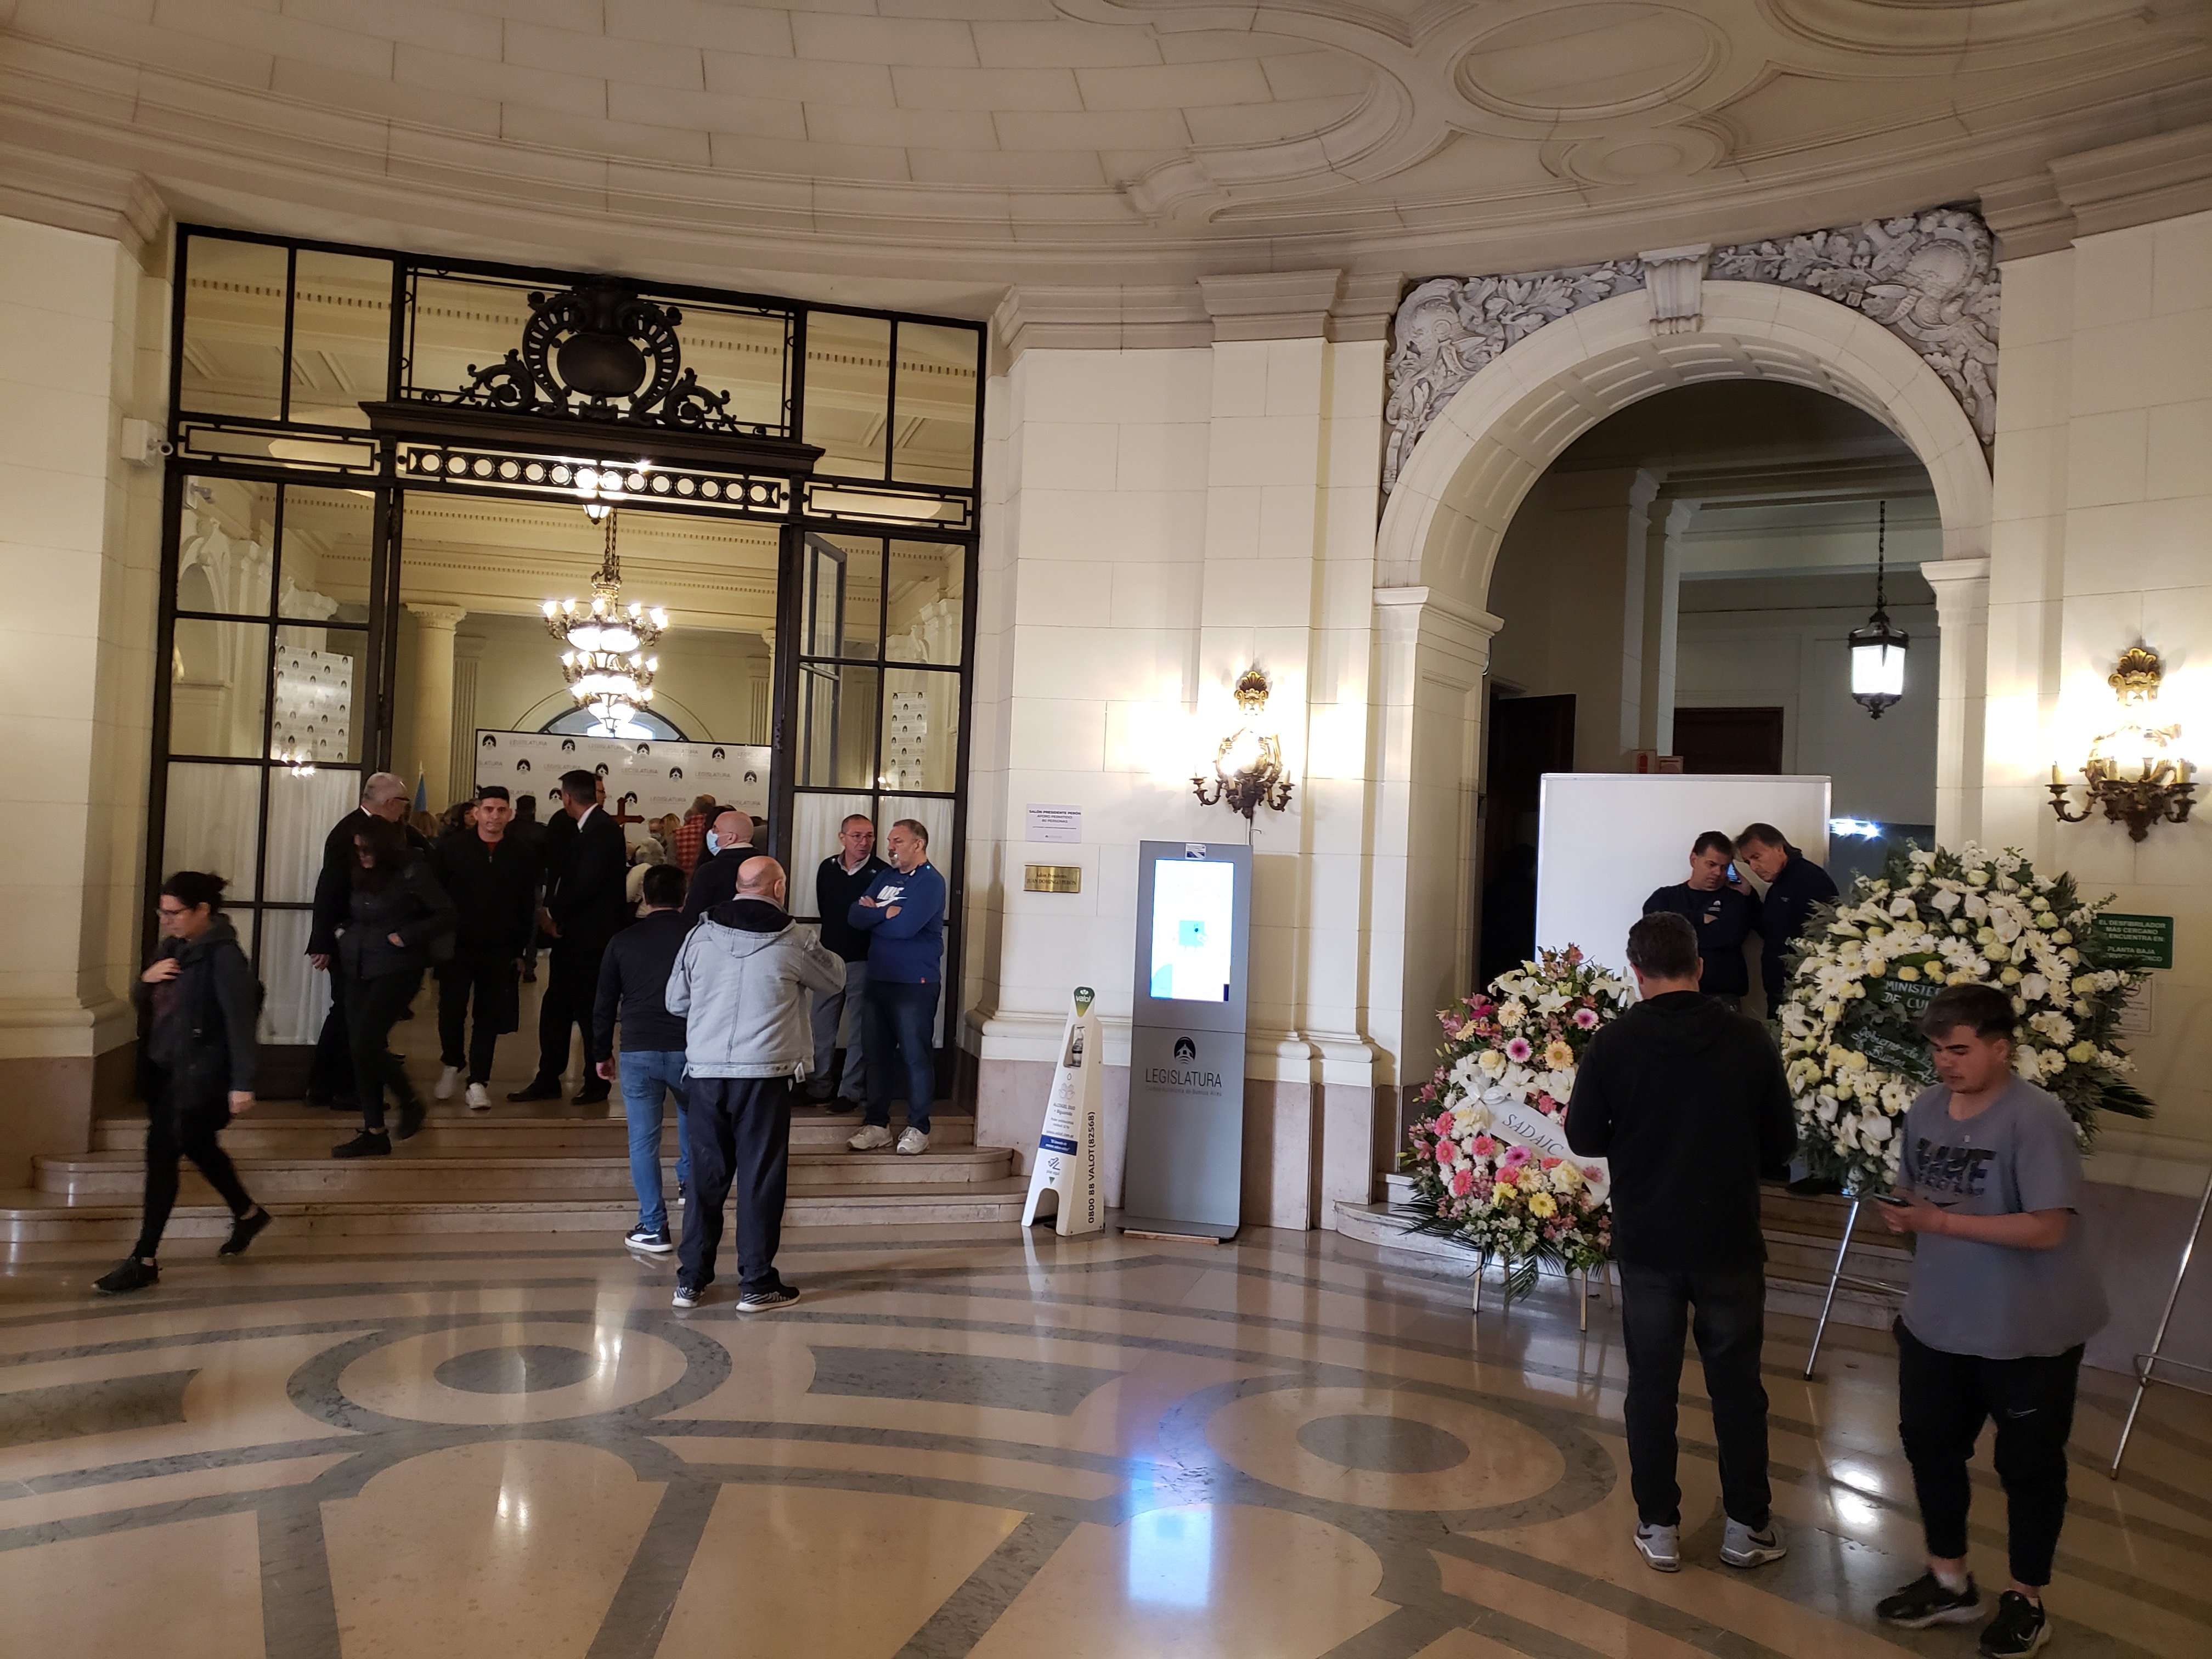 El hall de entrada al velatorio de Carlitos Balá en la Legislatura Porteña